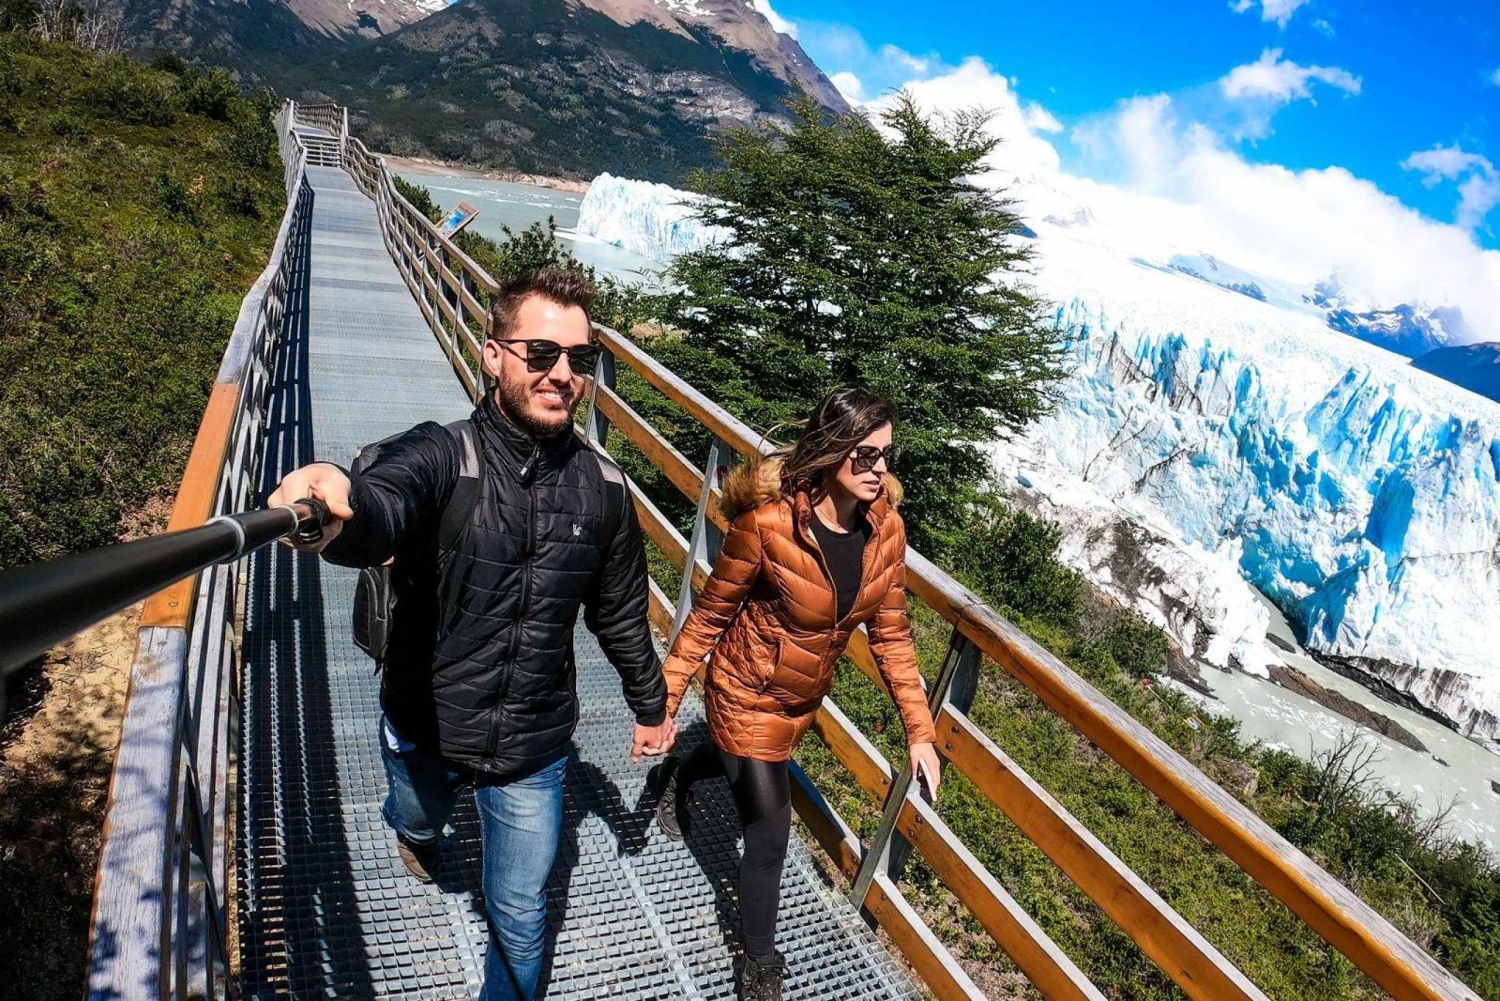 Privat tur til Perito Moreno-gletsjeren